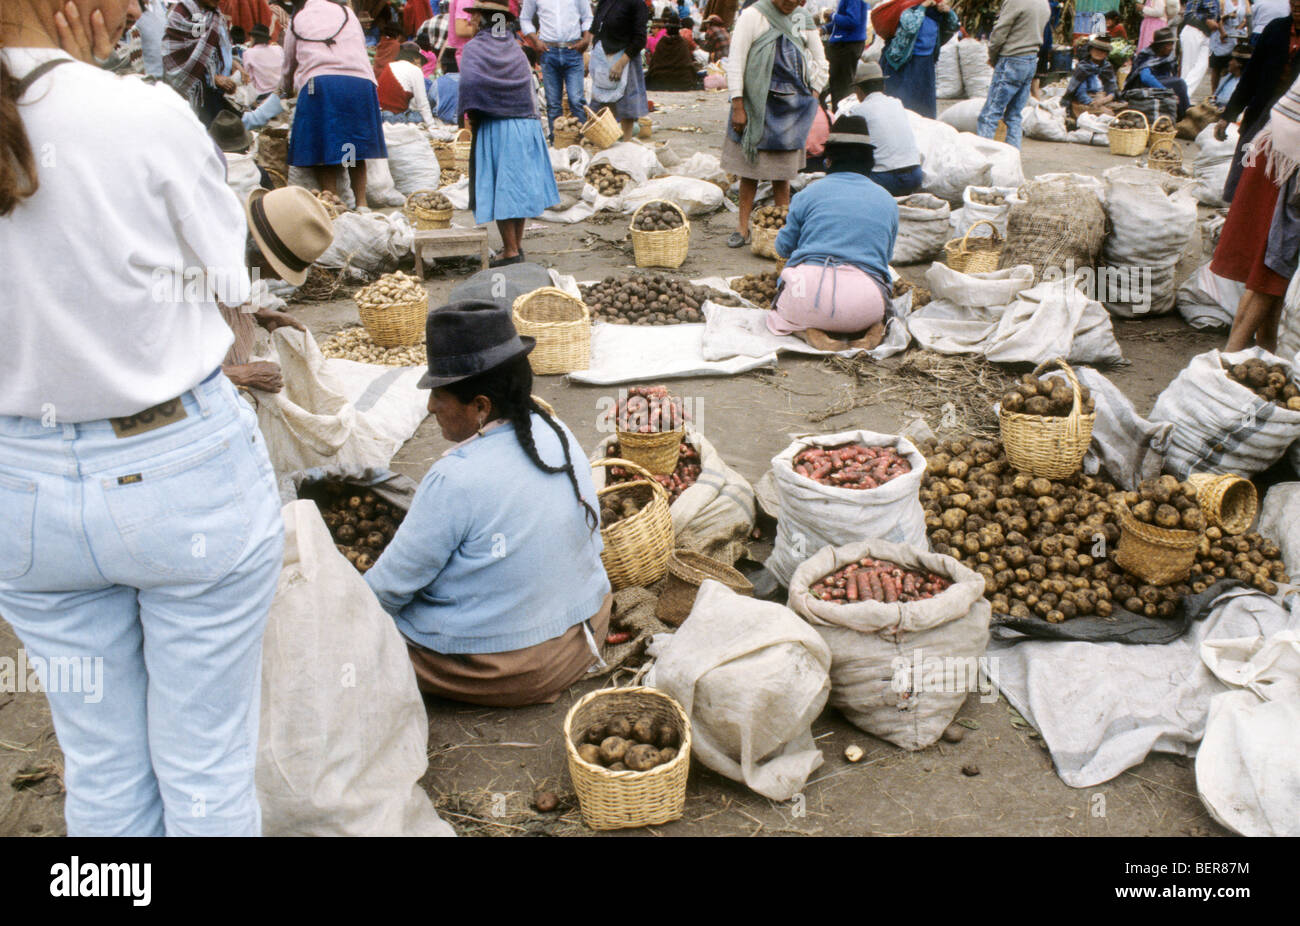 Potato sellers.  Ecuador highlands local market. Stock Photo